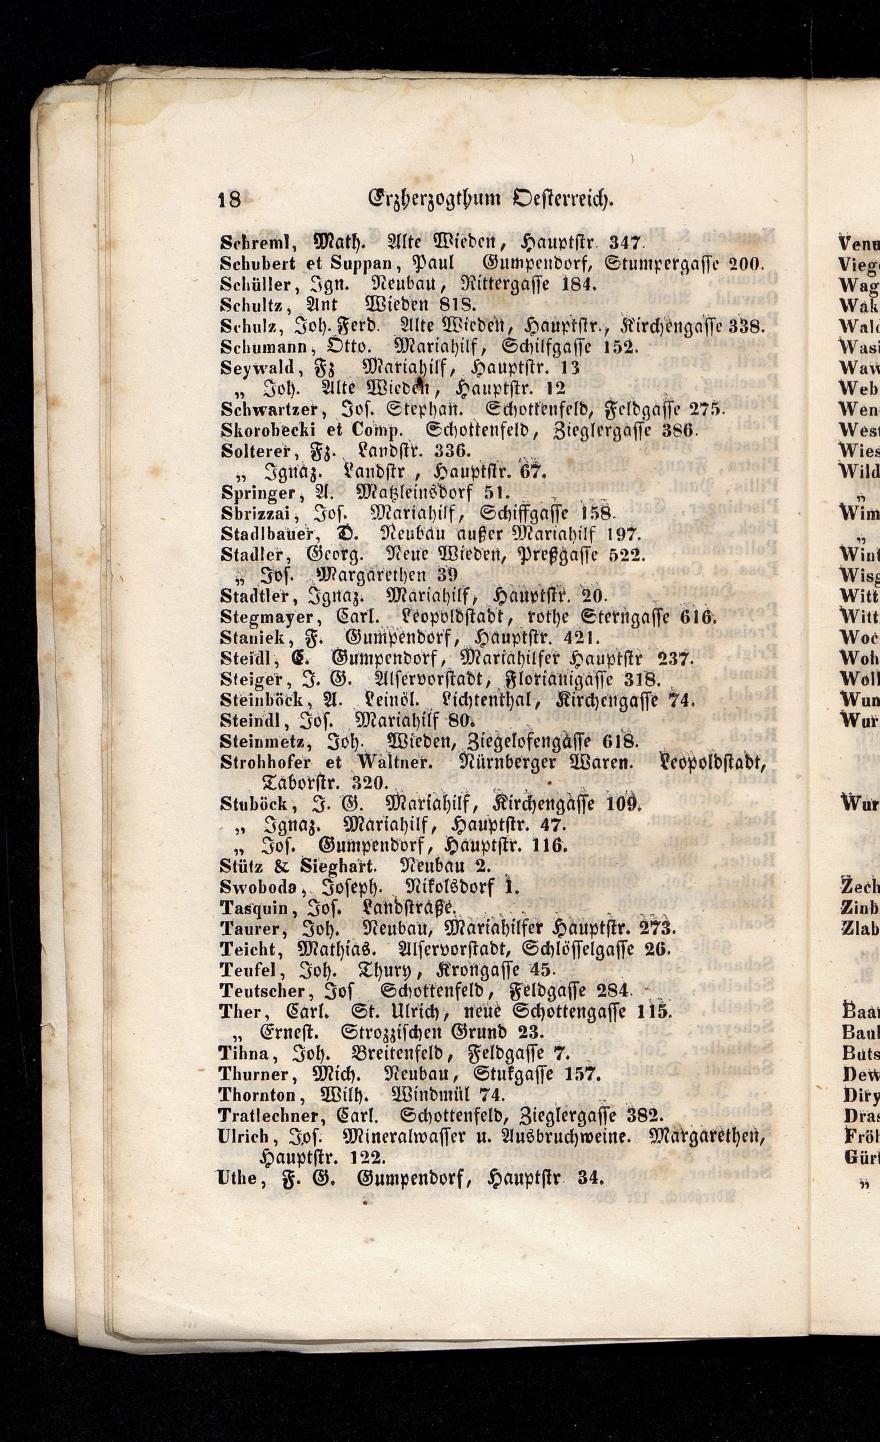 Grosses Adressbuch der Kaufleute. No. 13. Oesterreich ober u. unter der Enns 1844 - Seite 22